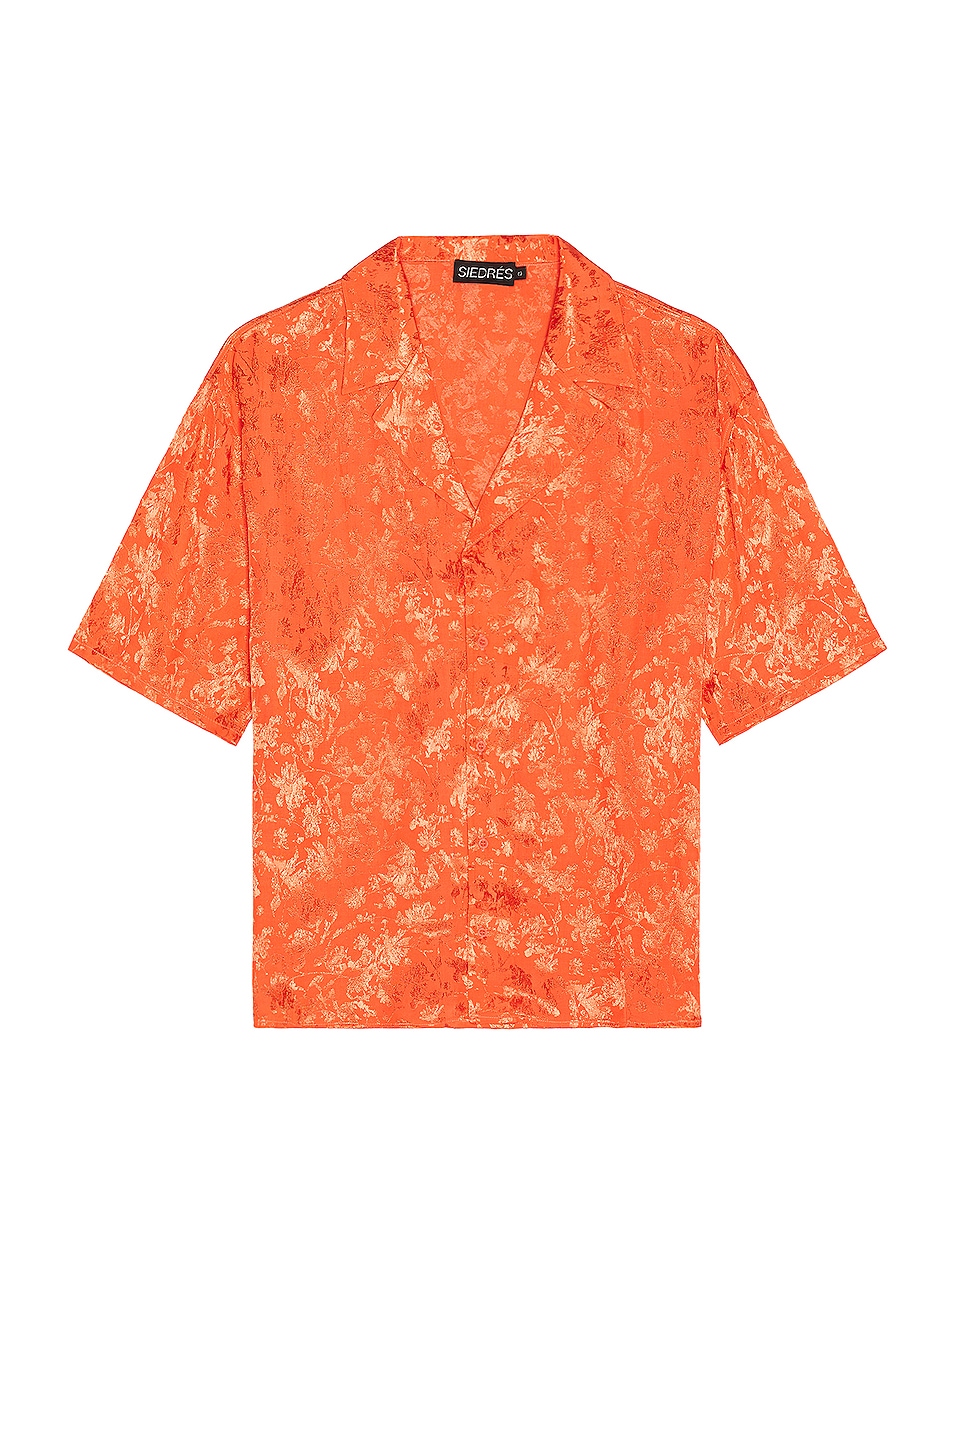 Рубашка Siedres Resort Collar Jacquard, оранжевый